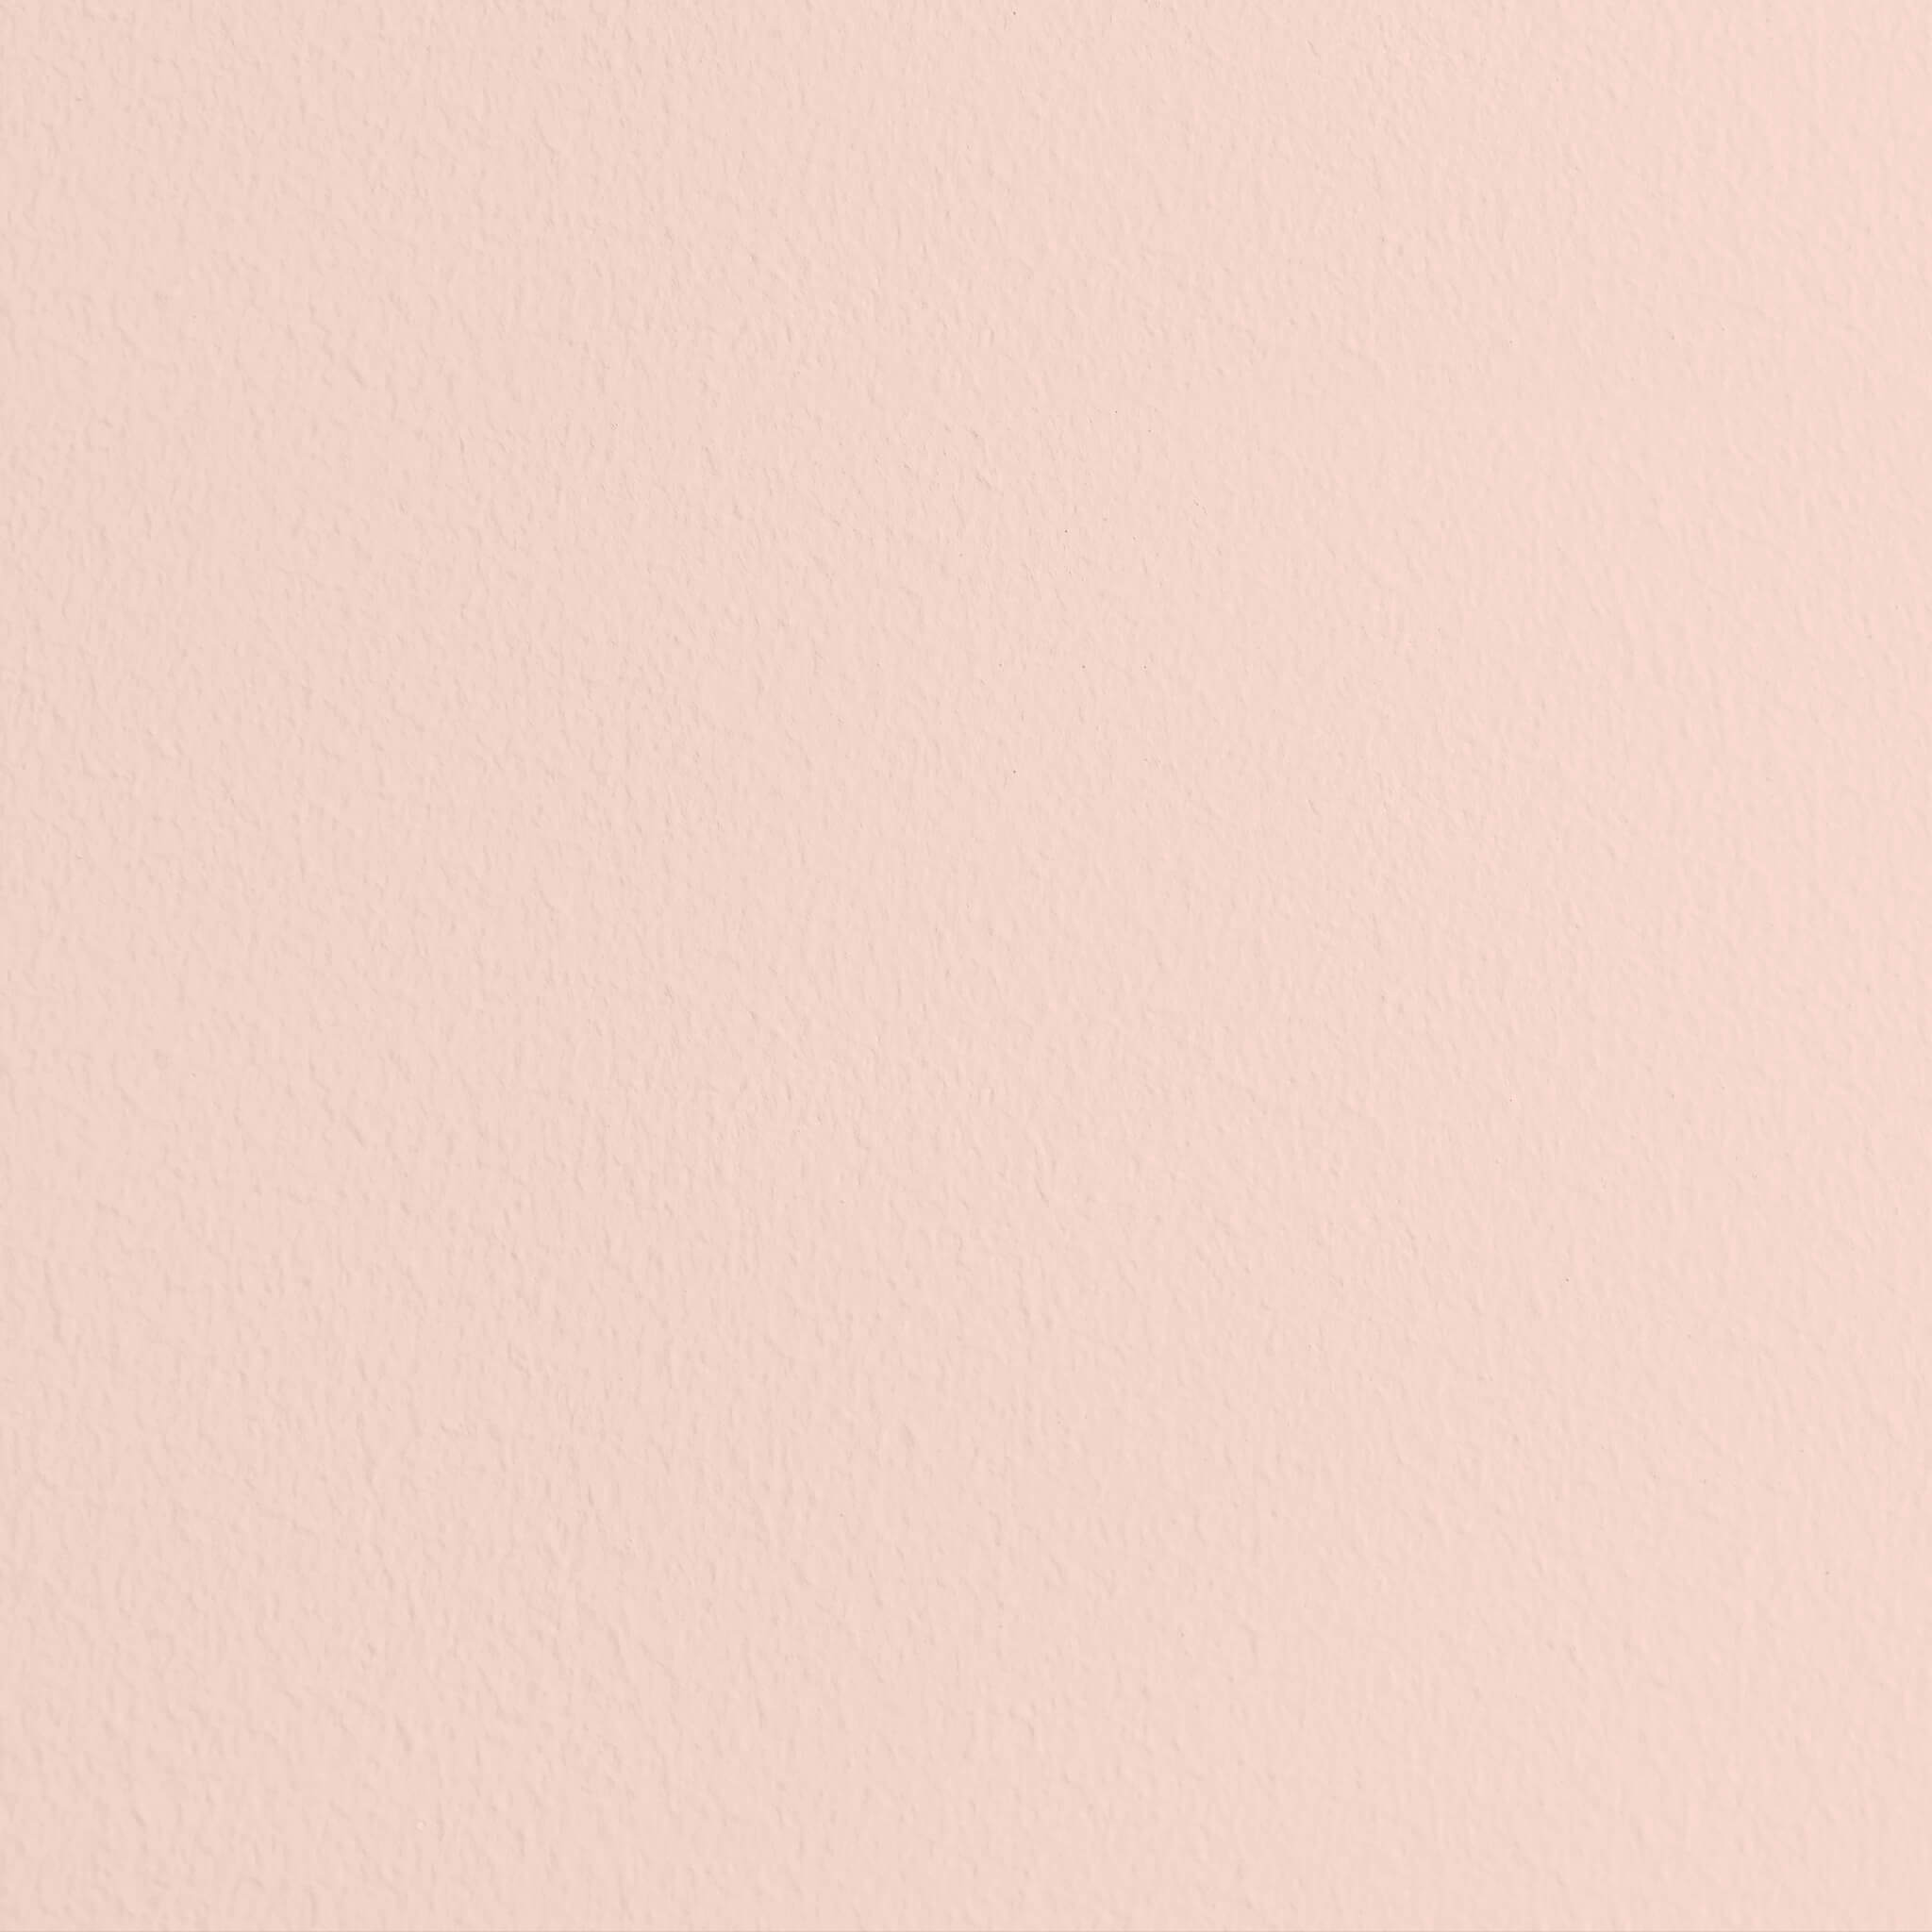 Mylands Palmerston Pink No. 243 - Wood & Metal Matt / Lack Matt, 2.5L